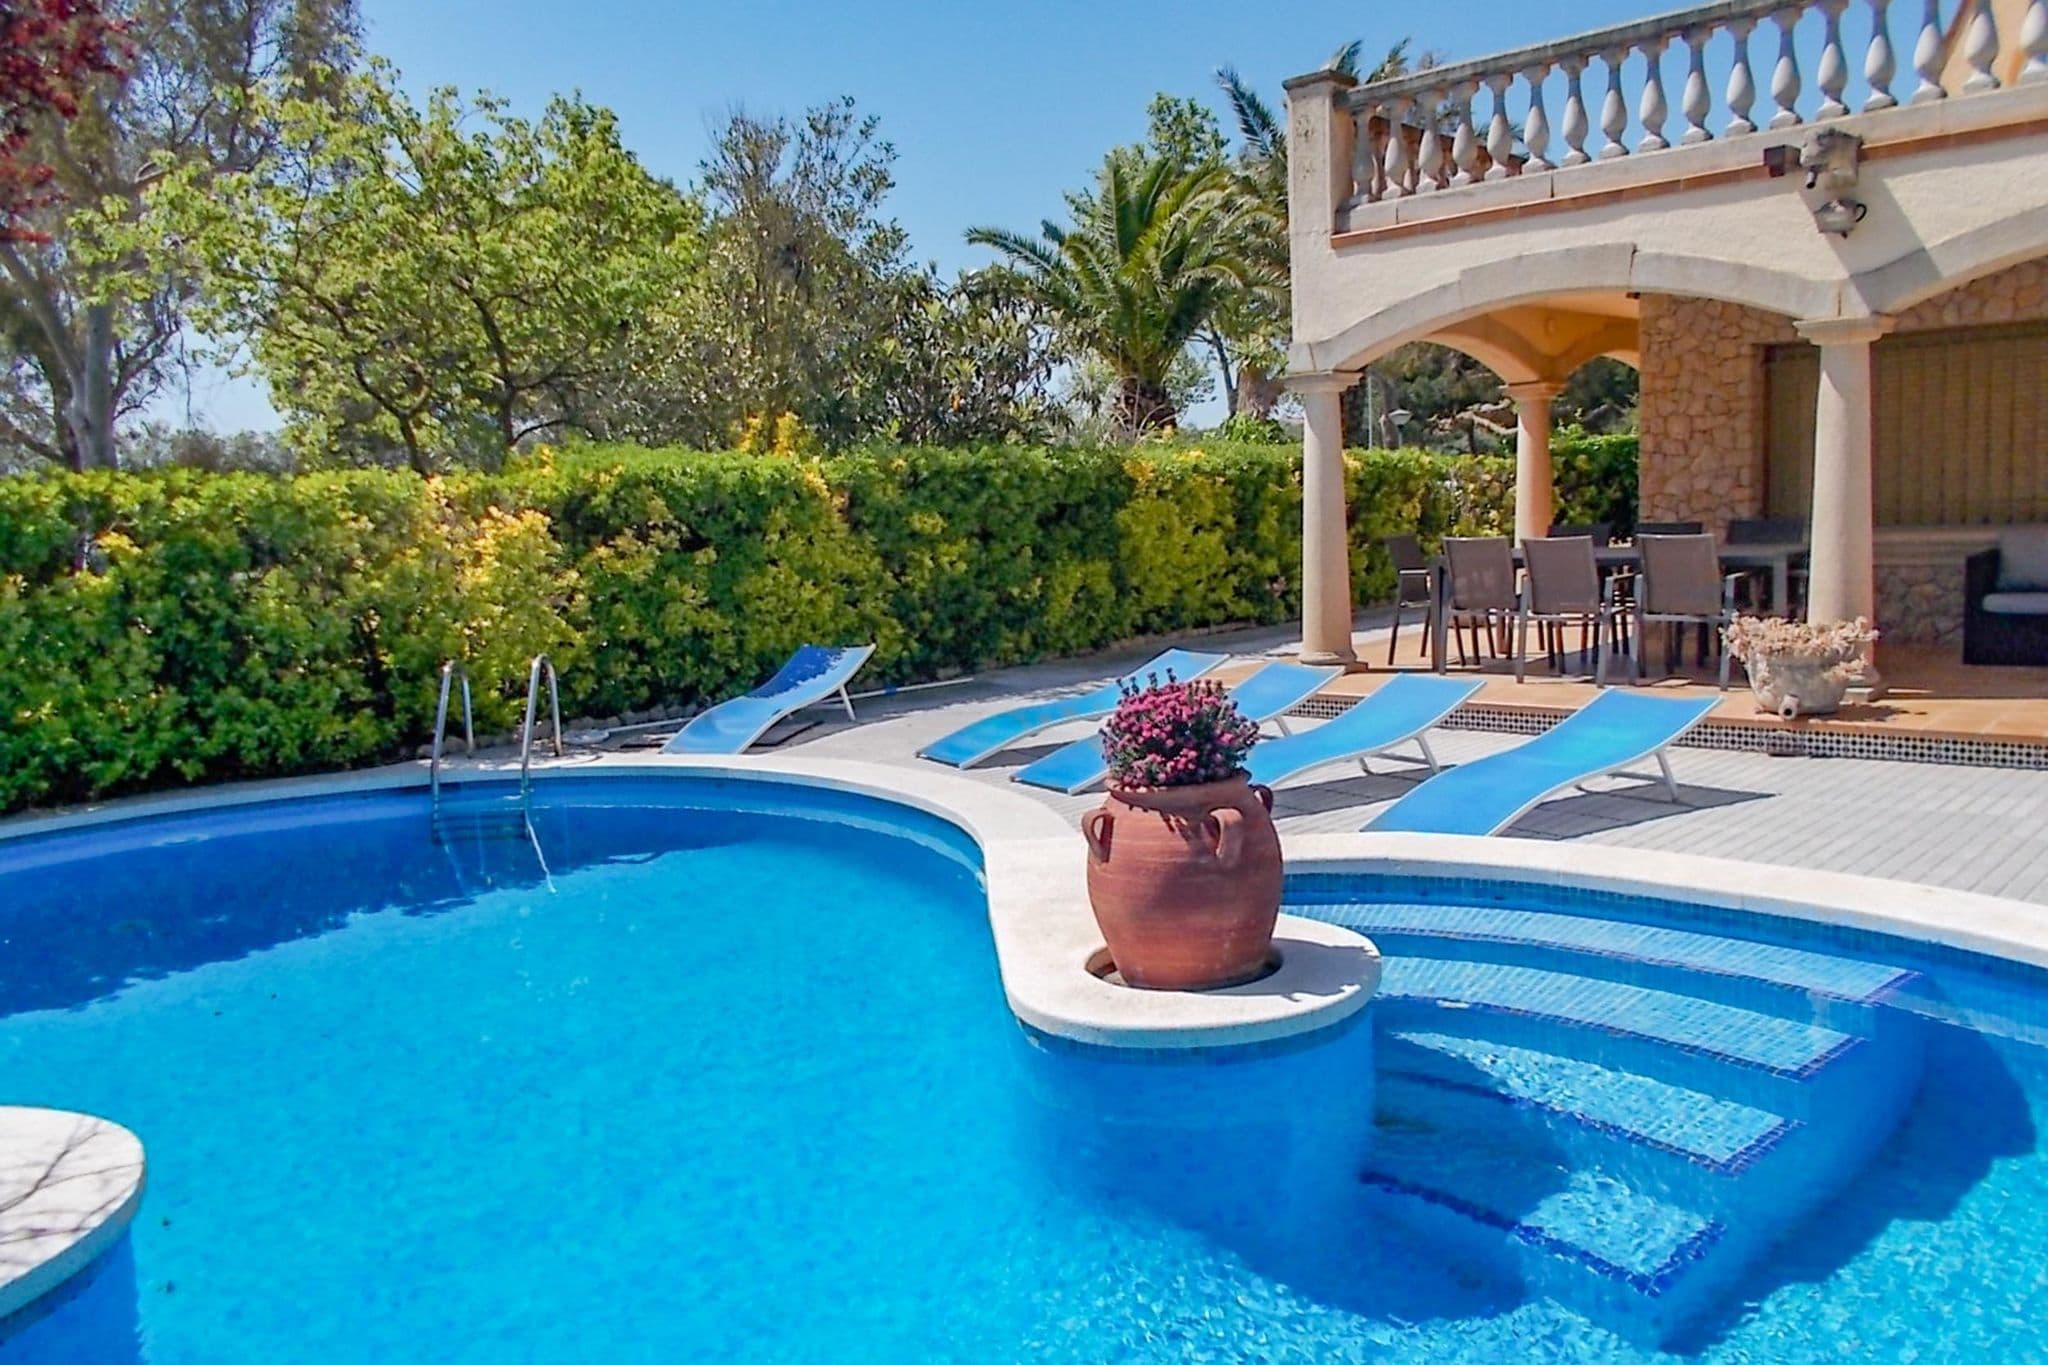 Schitterende villa met eigen zwembad, volop luxe en op slechts 500m van de kust